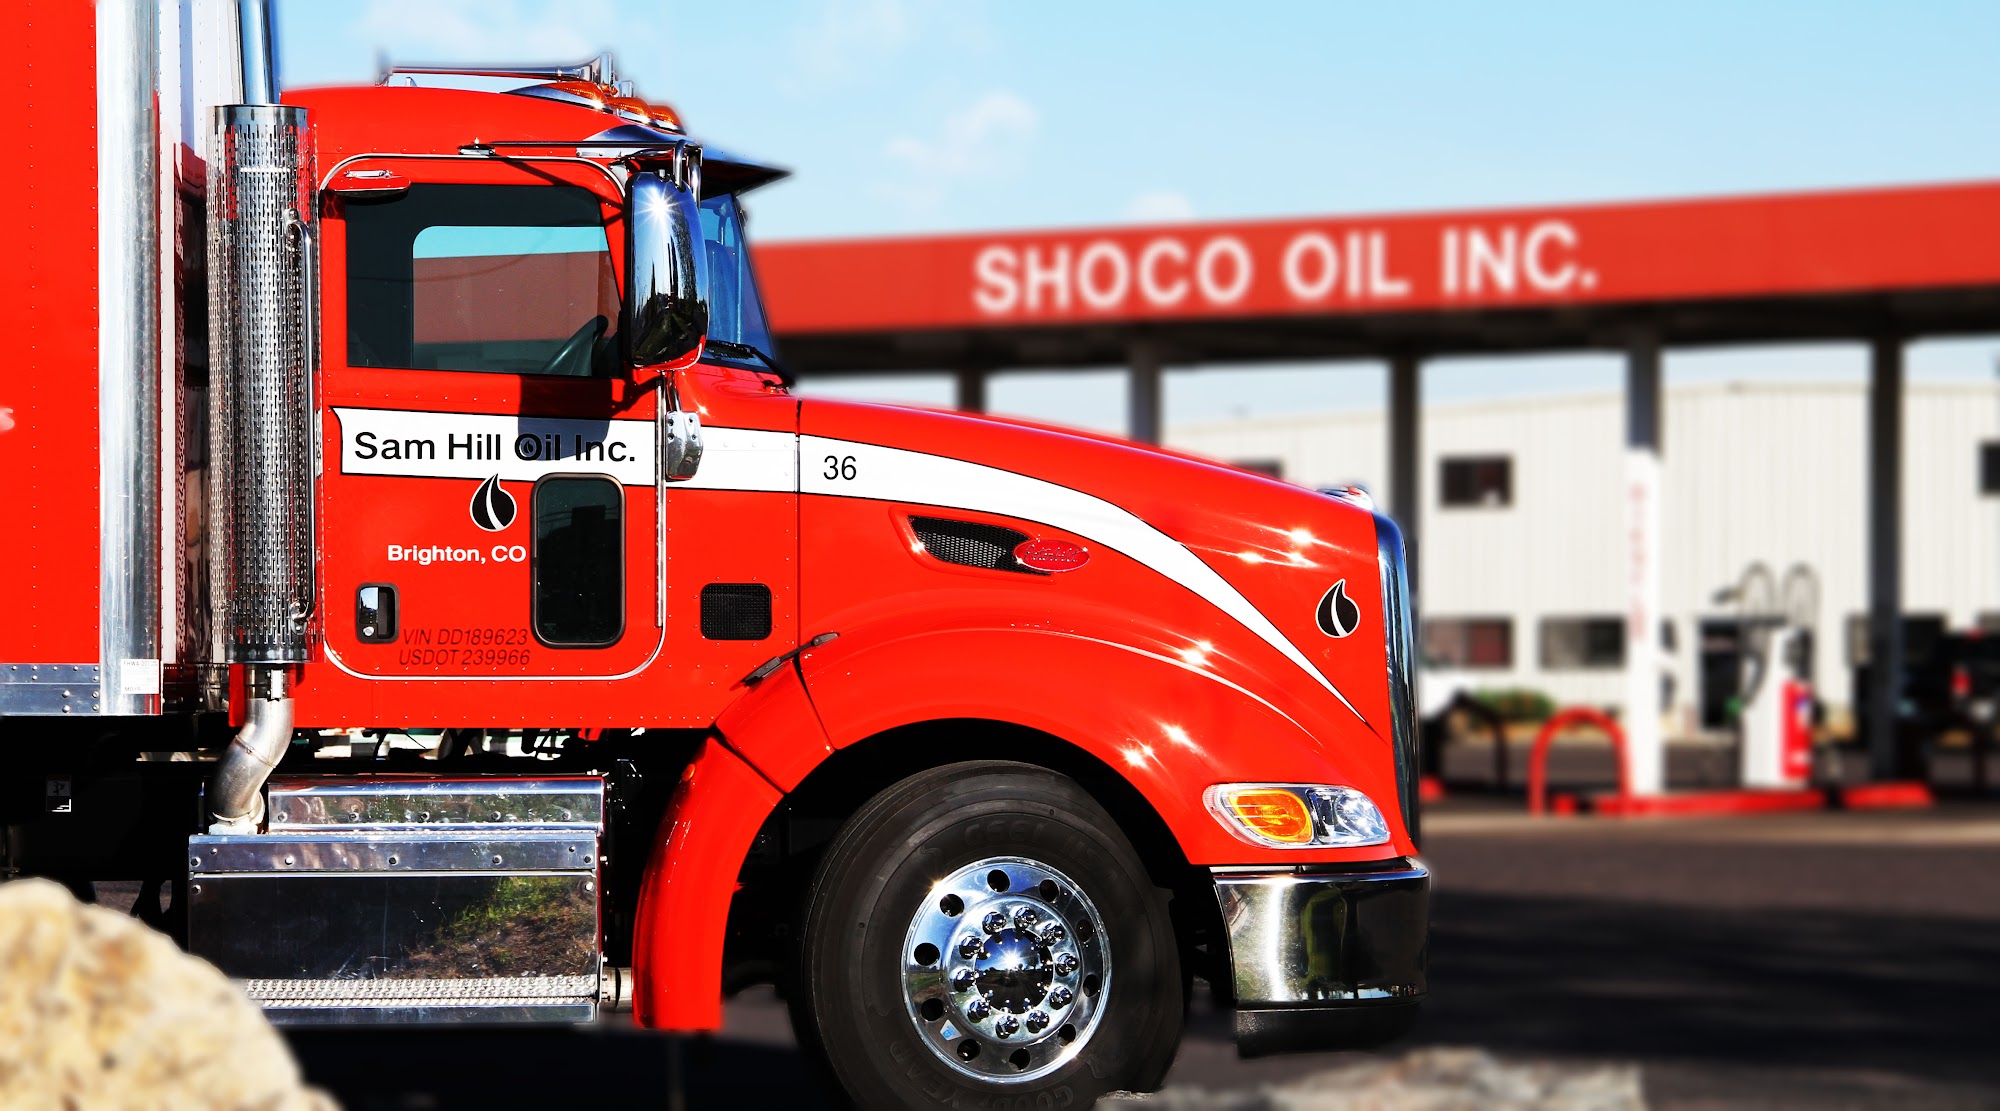 Shoco Oil Inc